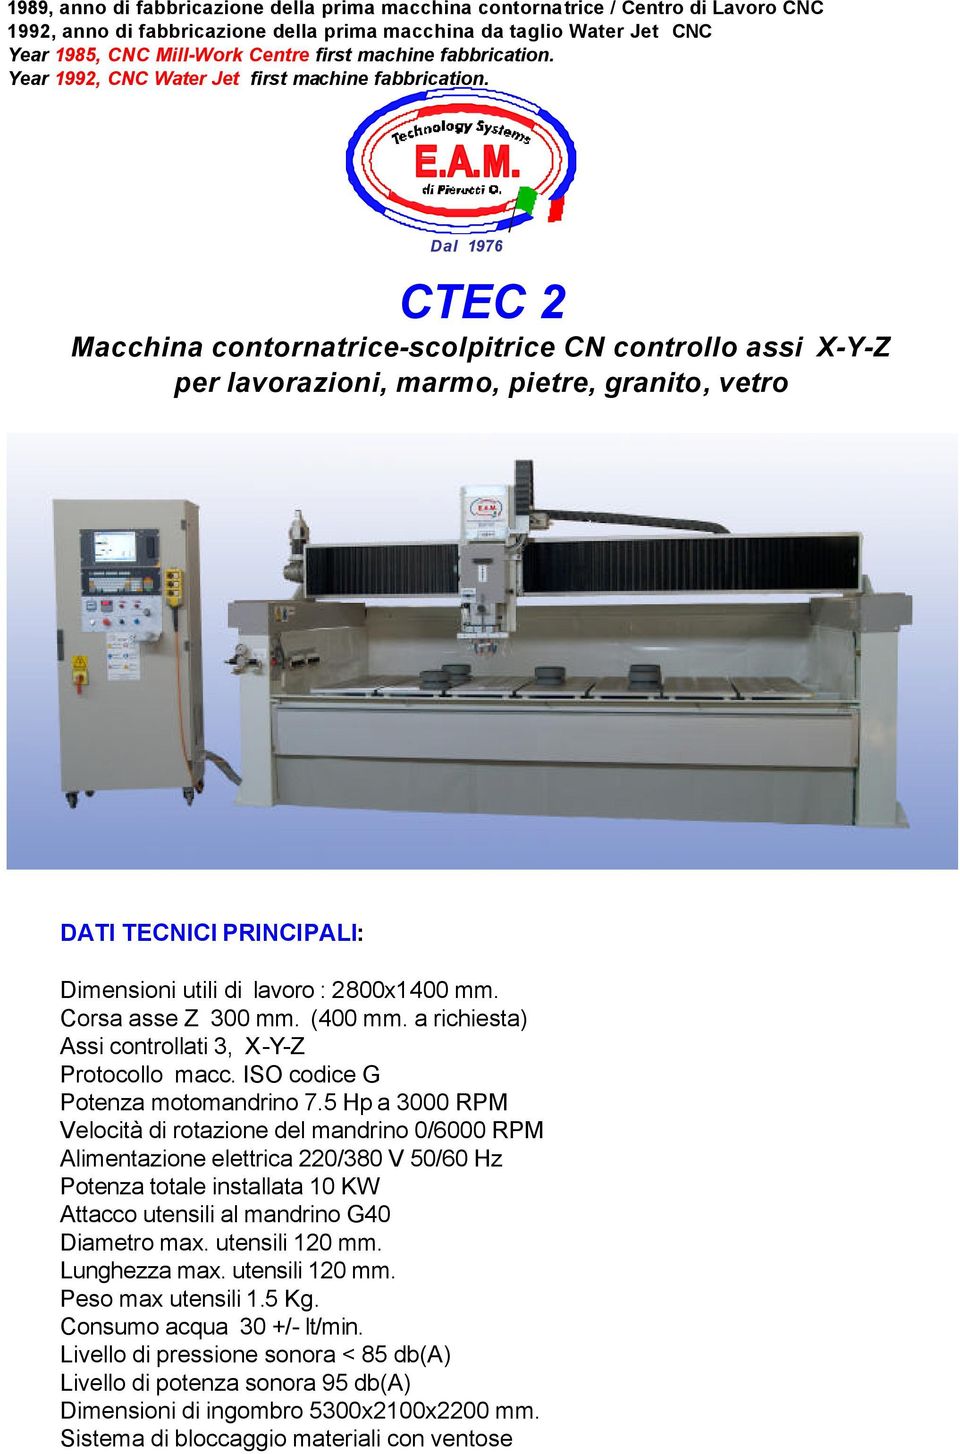 Dal 1976 CTEC 2 Macchina contornatrice-scolpitrice CN controllo assi X-Y-Z per lavorazioni, marmo, pietre, granito, vetro DATI TECNICI PRINCIPALI: Dimensioni utili di lavoro : 2800x1400 mm.